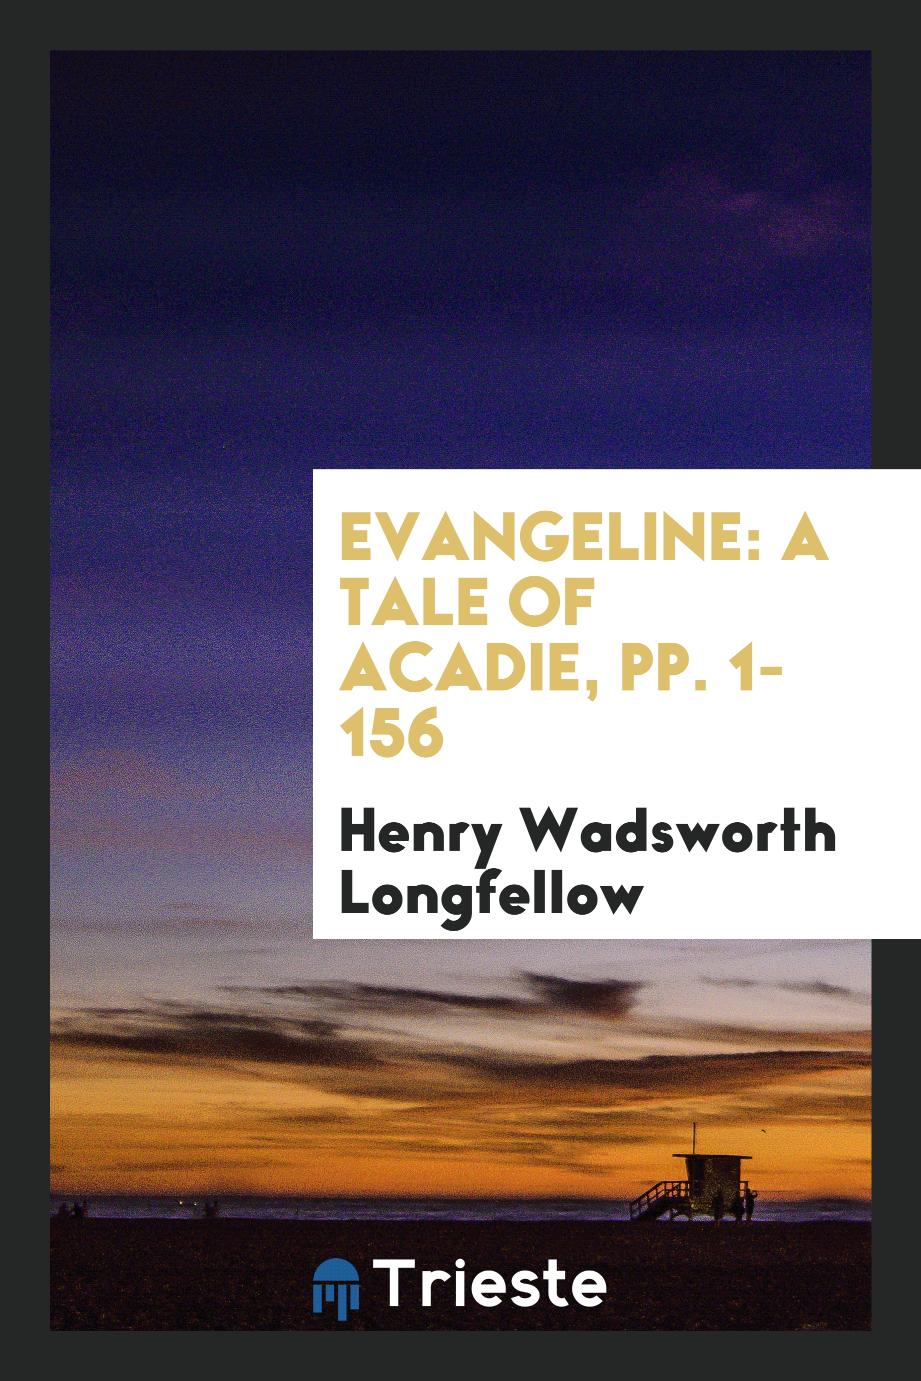 Evangeline: A Tale of Acadie, pp. 1-156